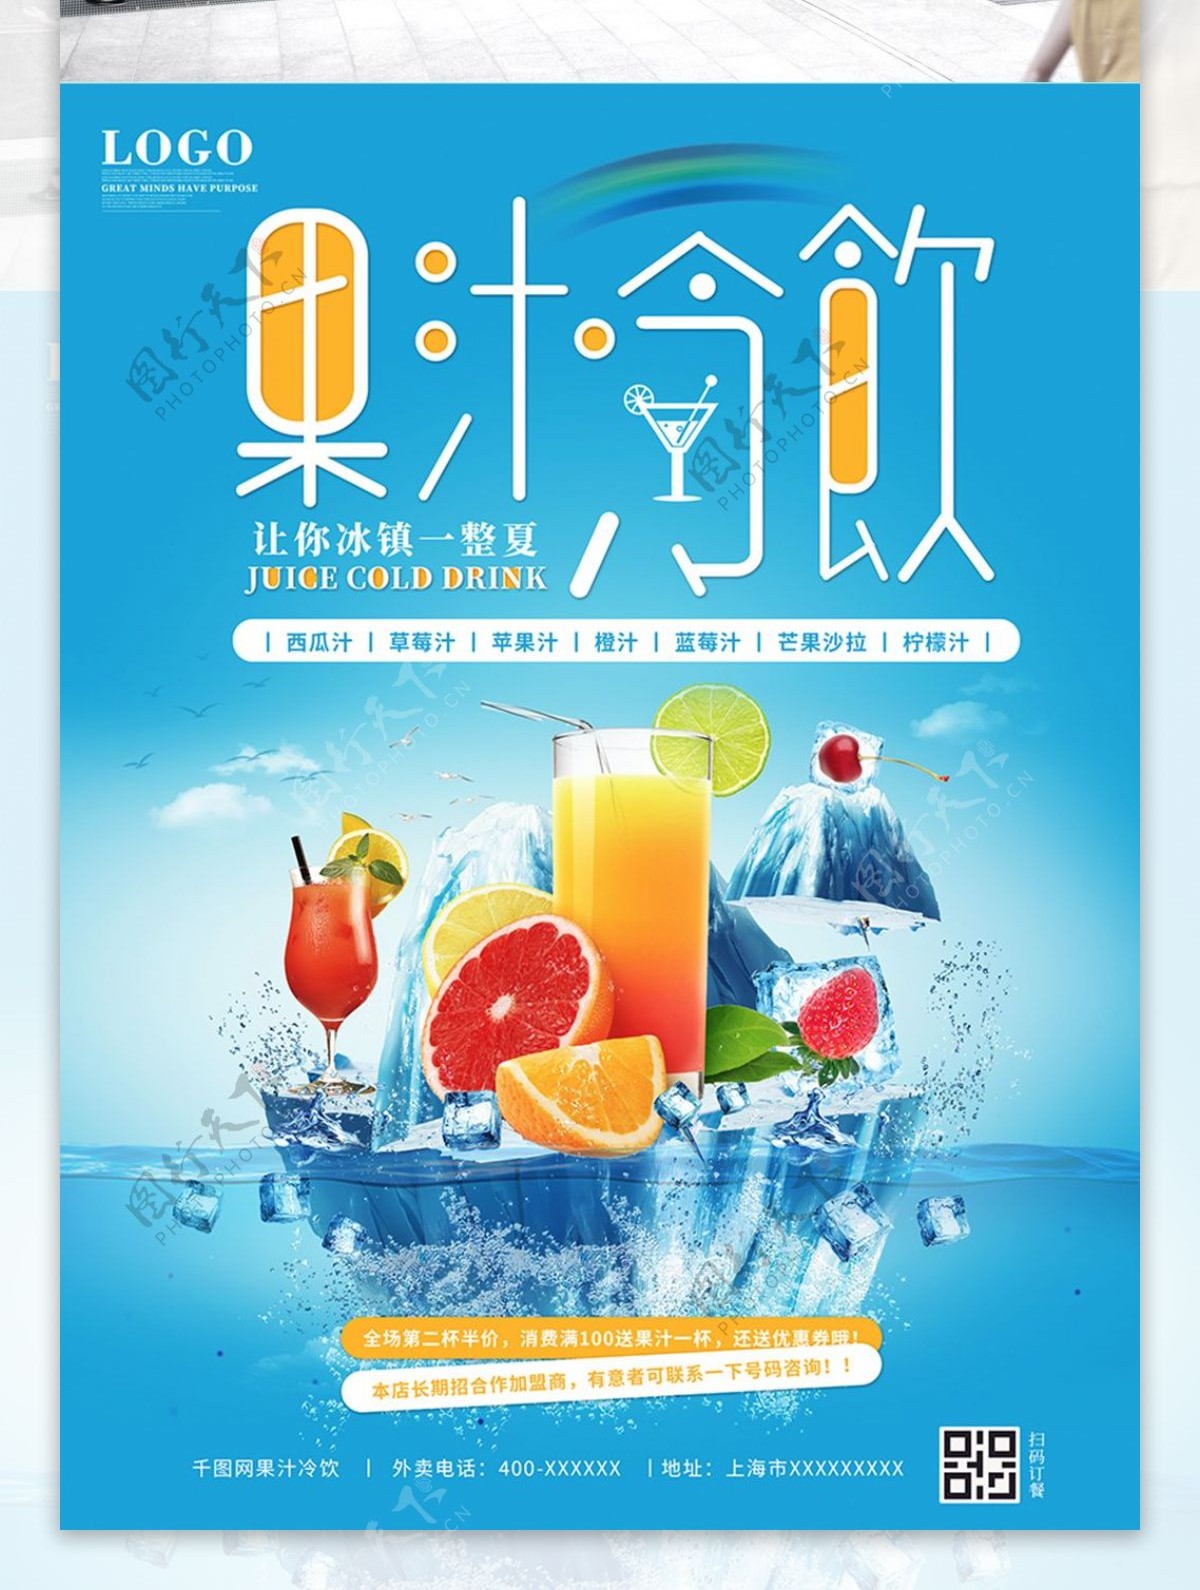 冰镇果汁冷饮奶茶咖啡店宣传单海报